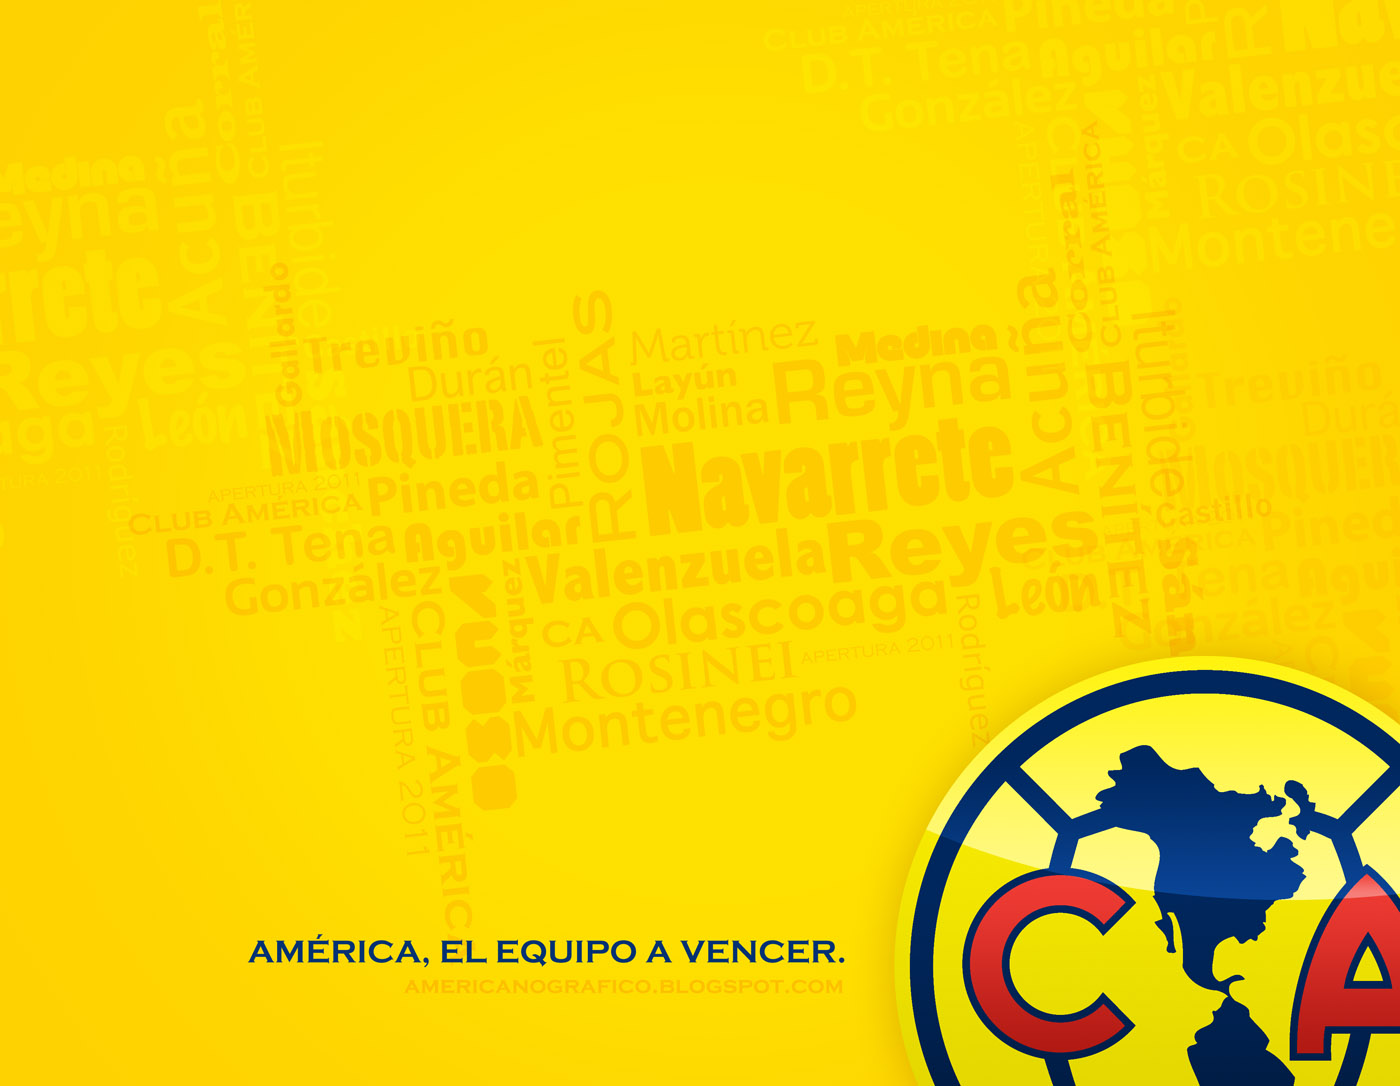 AMERICAnografico: Club América · 24092011CTG